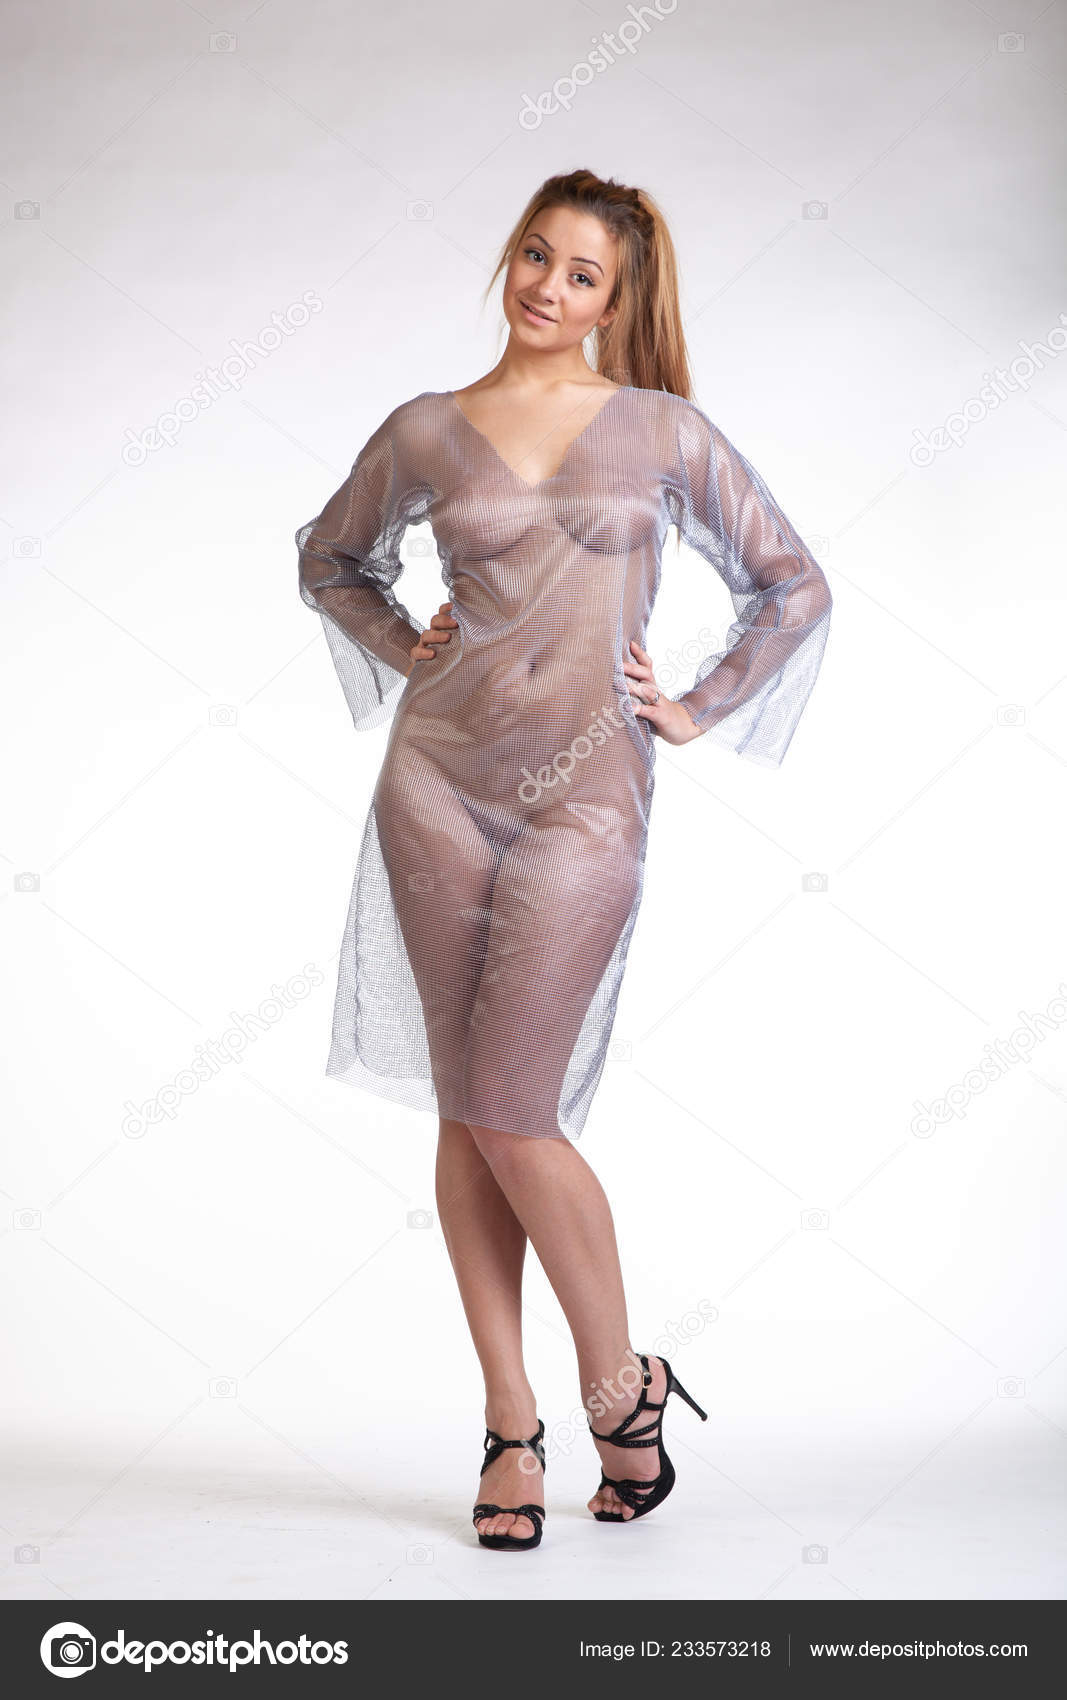 https://st4n.depositphotos.com/10086424/23357/i/1600/depositphotos_233573218-stock-photo-young-beautiful-girl-posing-nude.jpg